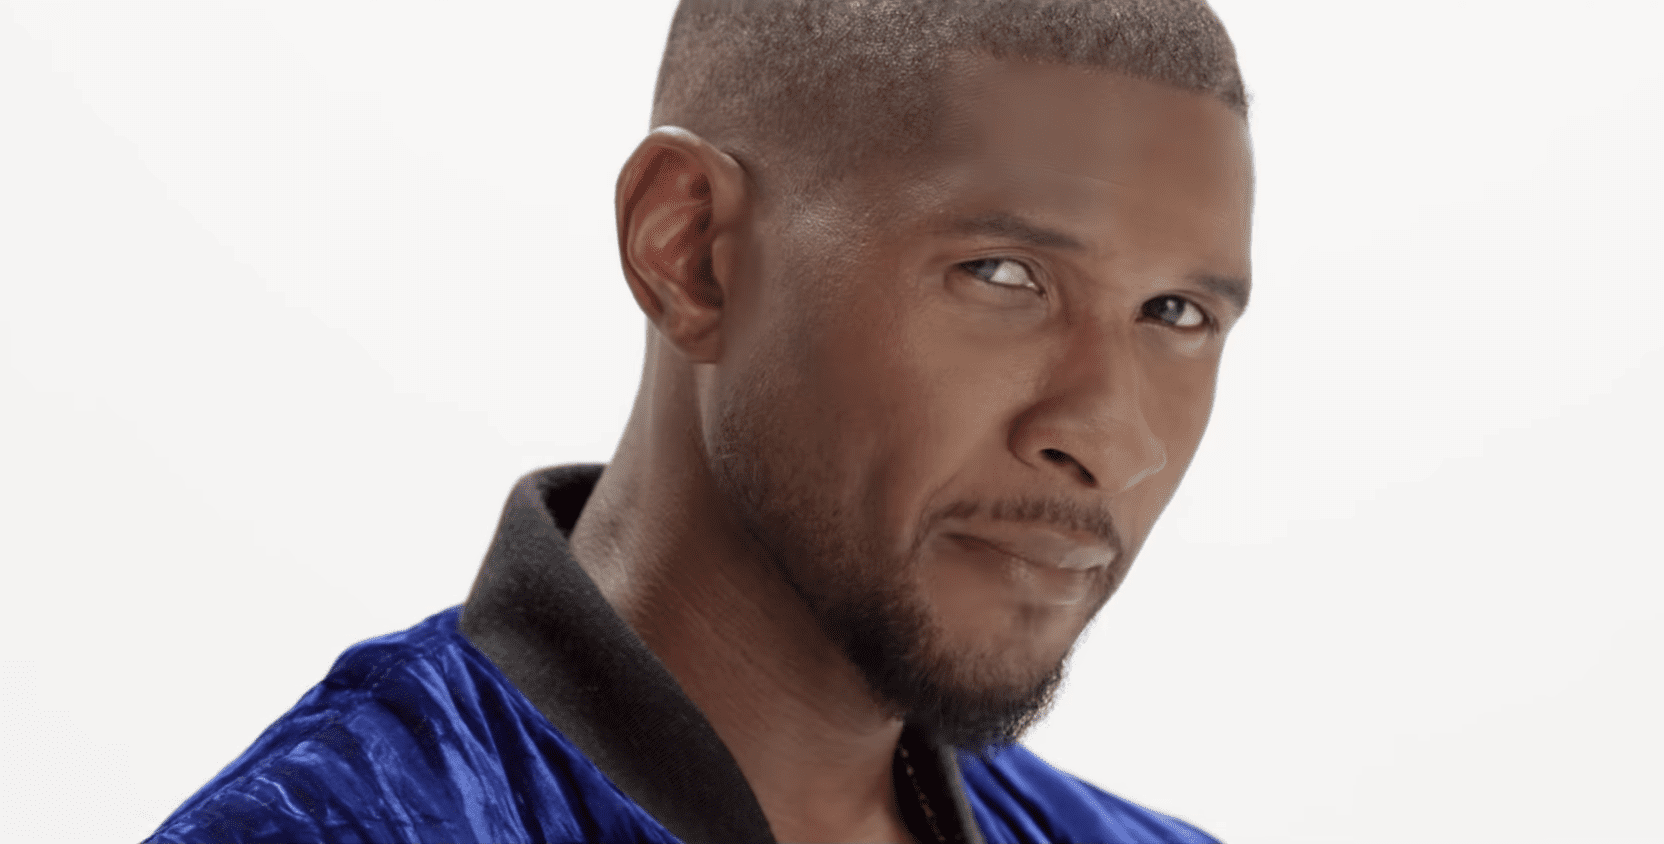 Exclusivo: Usher en el drama de stripper Hustlers junto a Jennifer Lopez